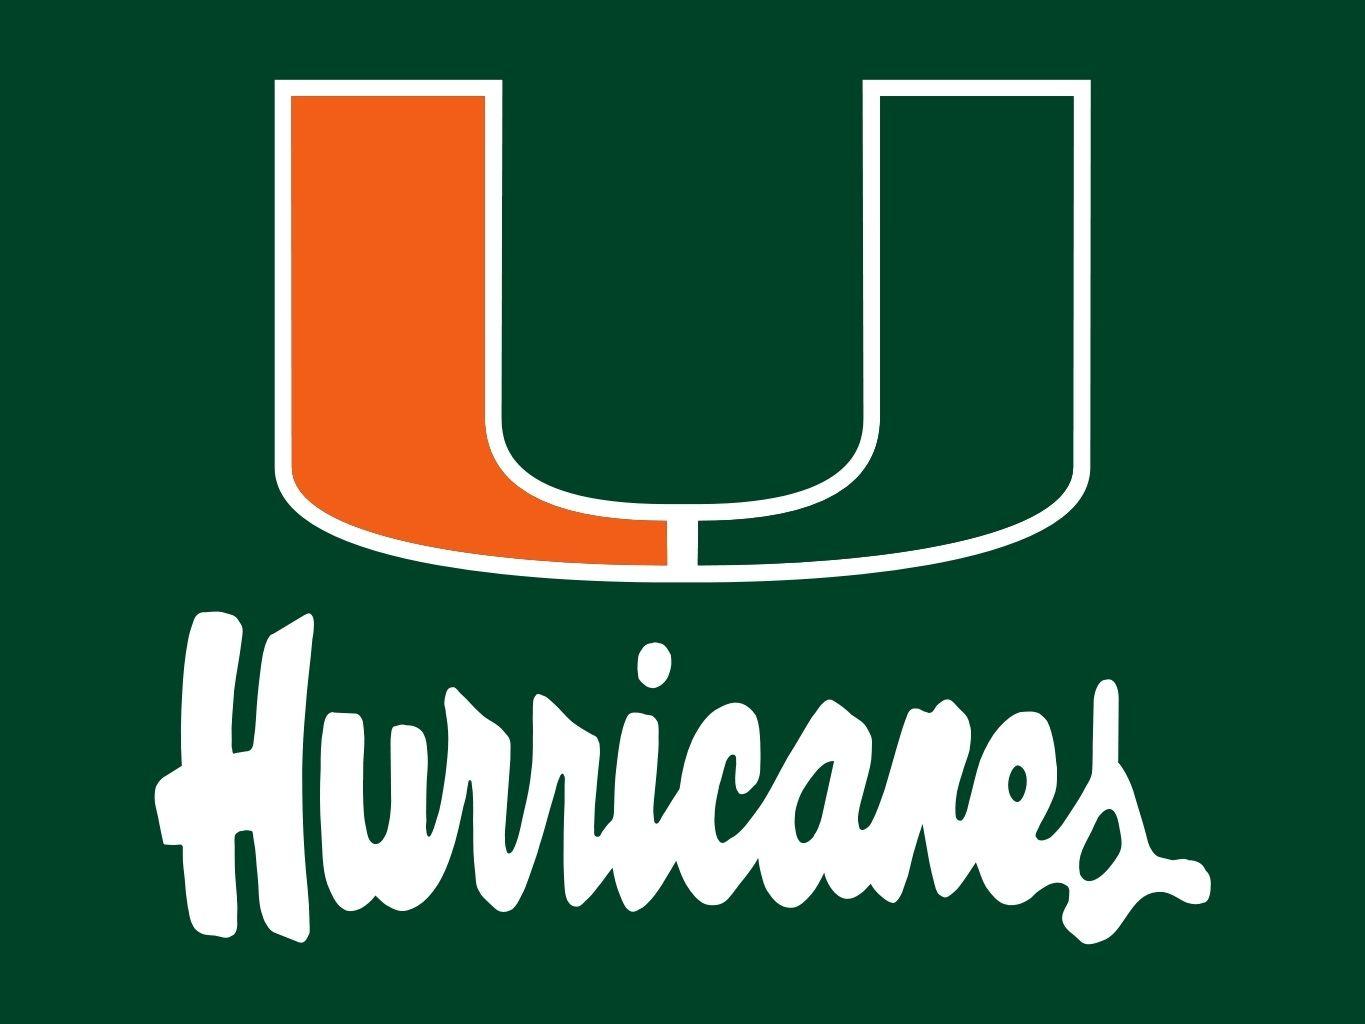 Hurricanes Baseball Logo - Miami Hurricanes. South Florida Baseball League